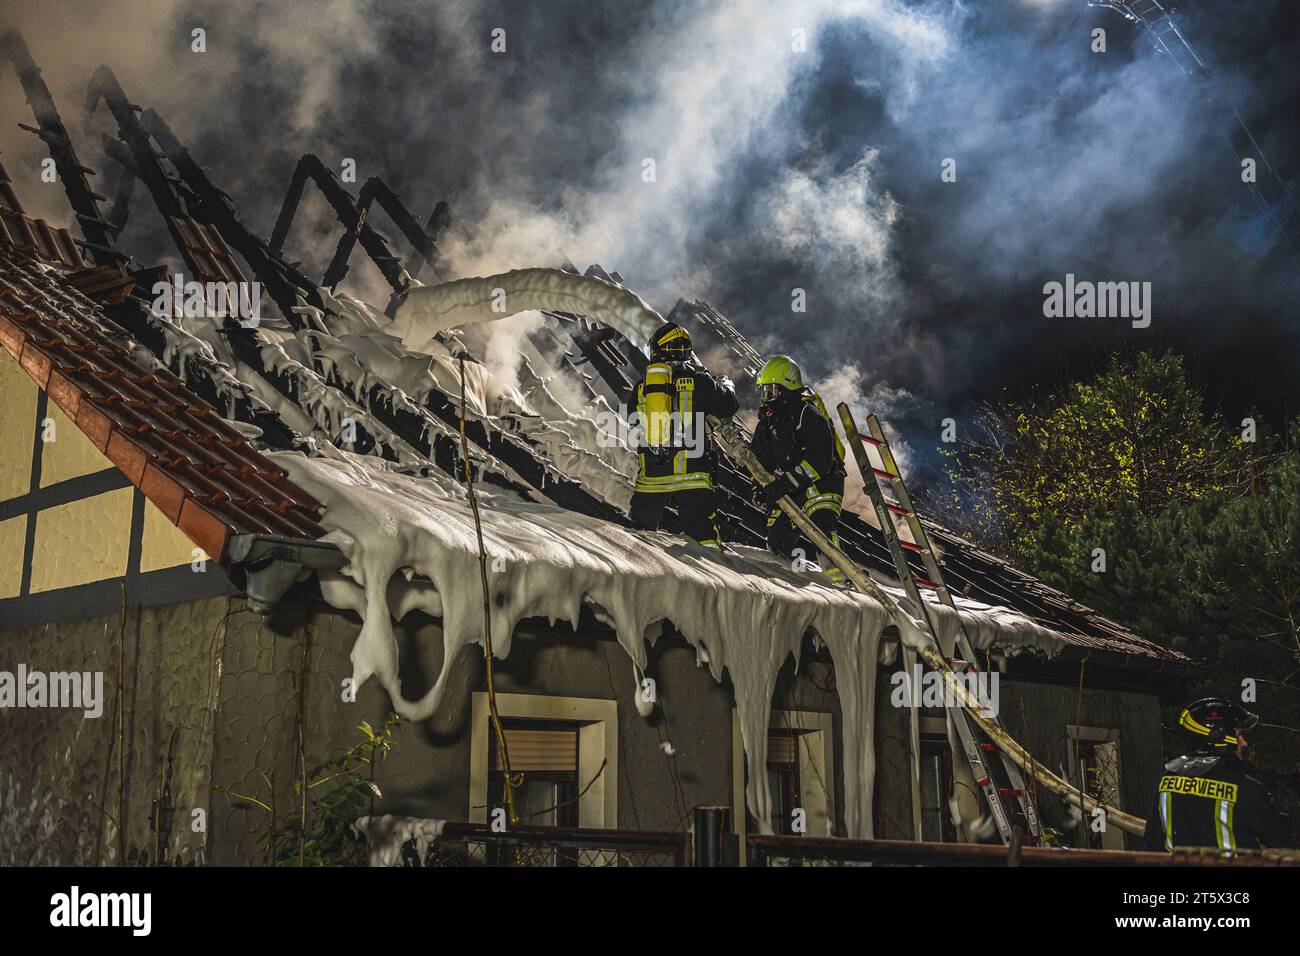 Zwei Einsatzkräfte der Feuerwehr bekämpfen einen Dachstuhlbrand mit Löschschaum. Rauch steigt aus dem völlig zerstörten Dach auf.  Am 06.11.2022 Stock Photo